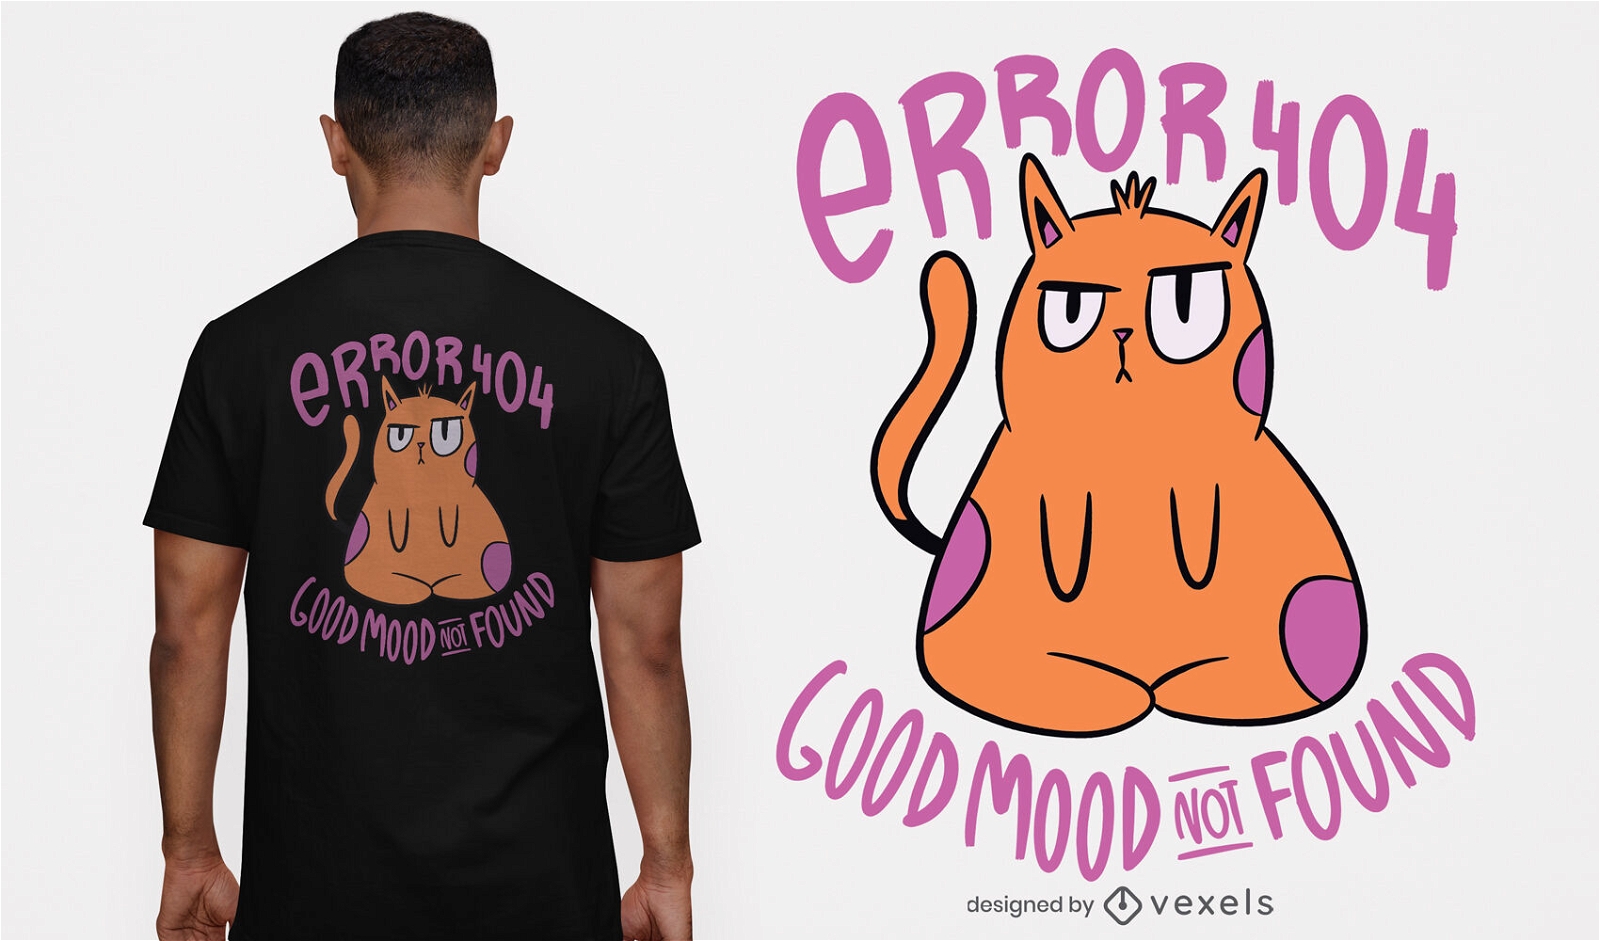 Bad mood cat cartoon t-shirt design